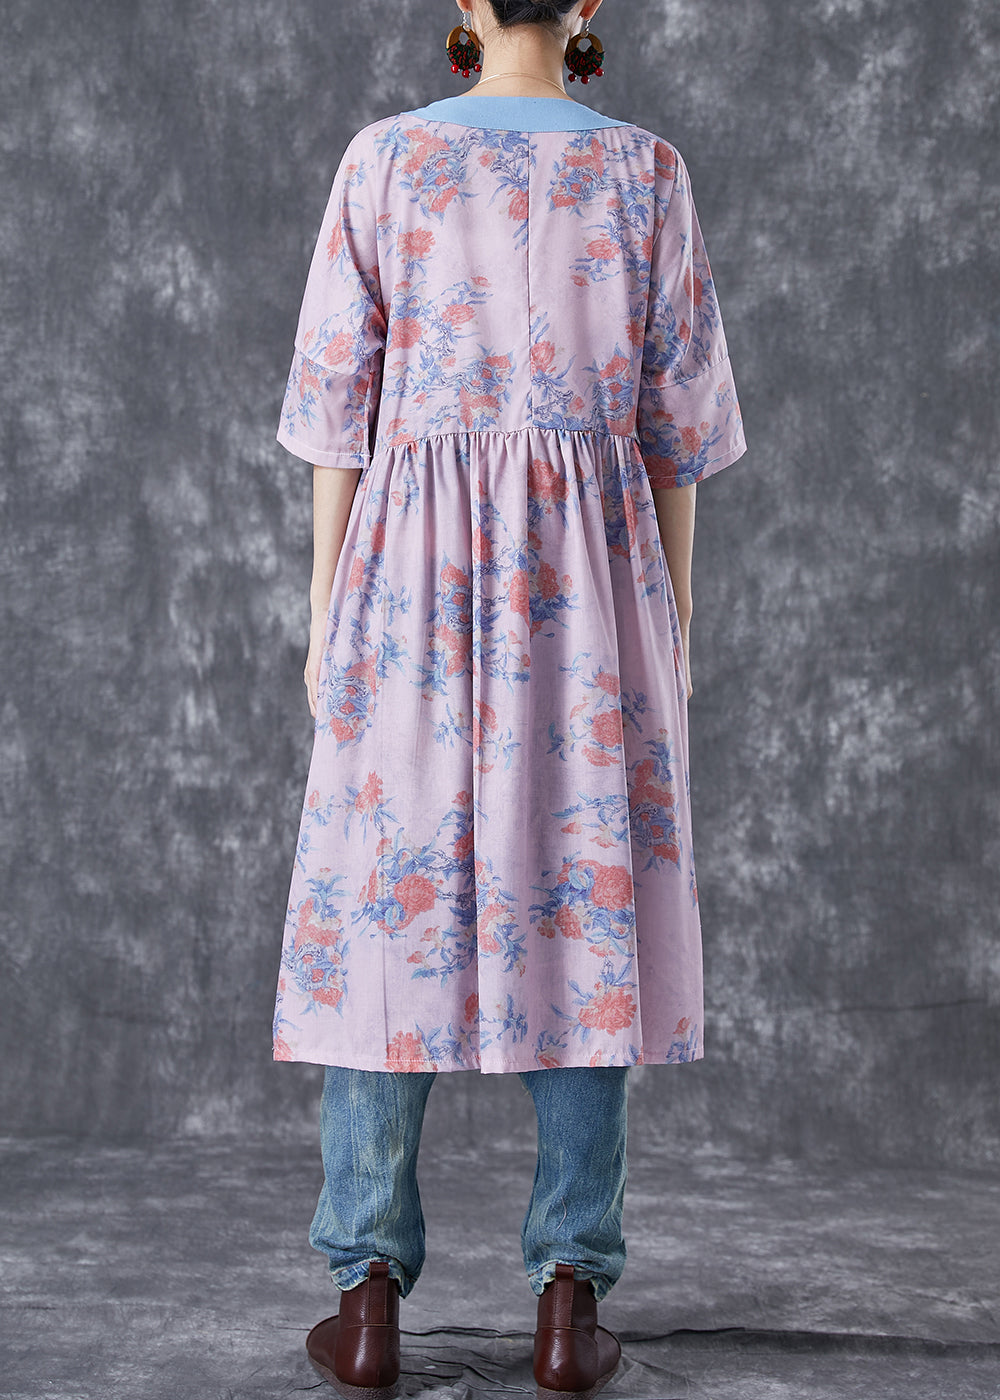 Natural Pink V Neck Patchwork Print Linen Robe Dresses Summer TA1038